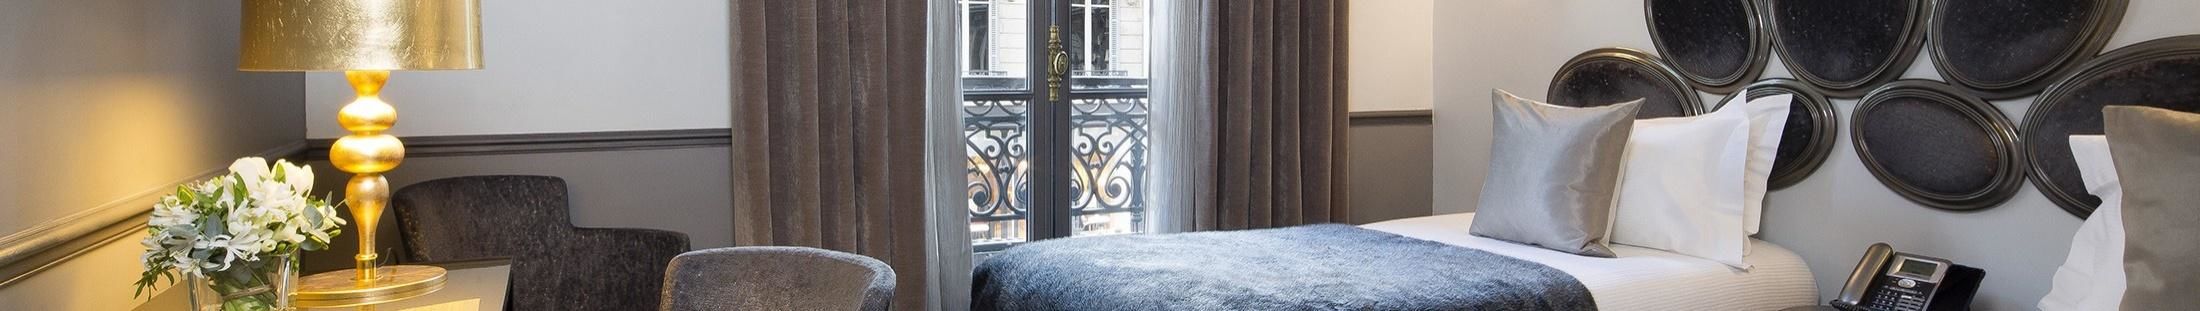 Hotel Lumen Paris Louvre - Quarto